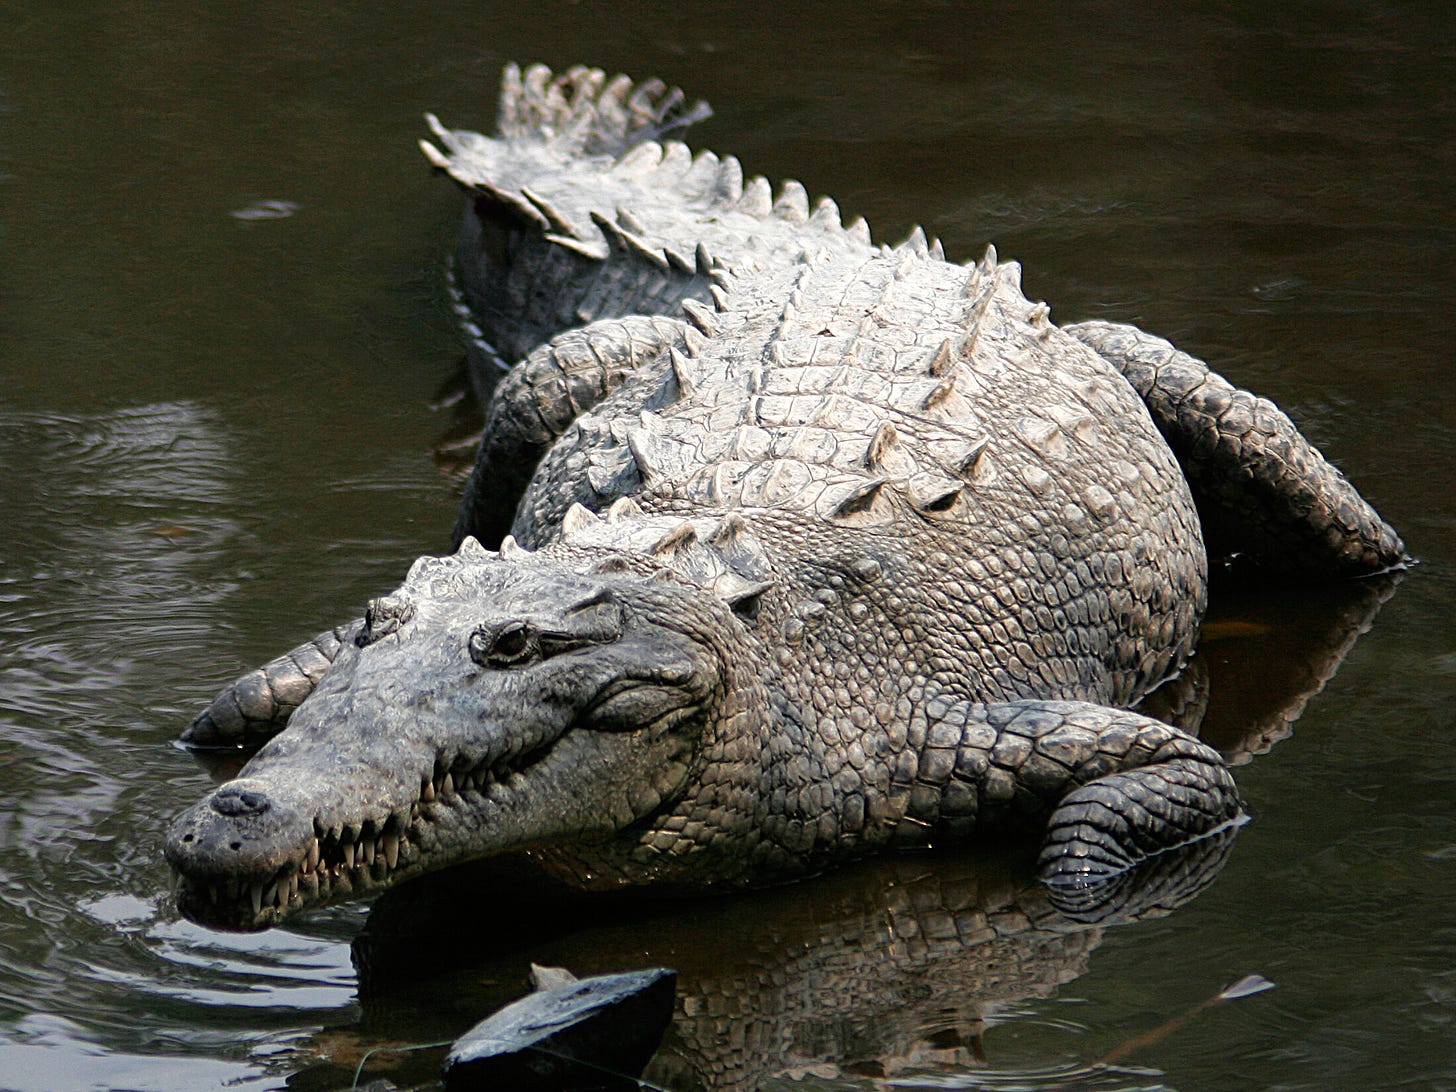 A documented case of a crocodile virgin birth